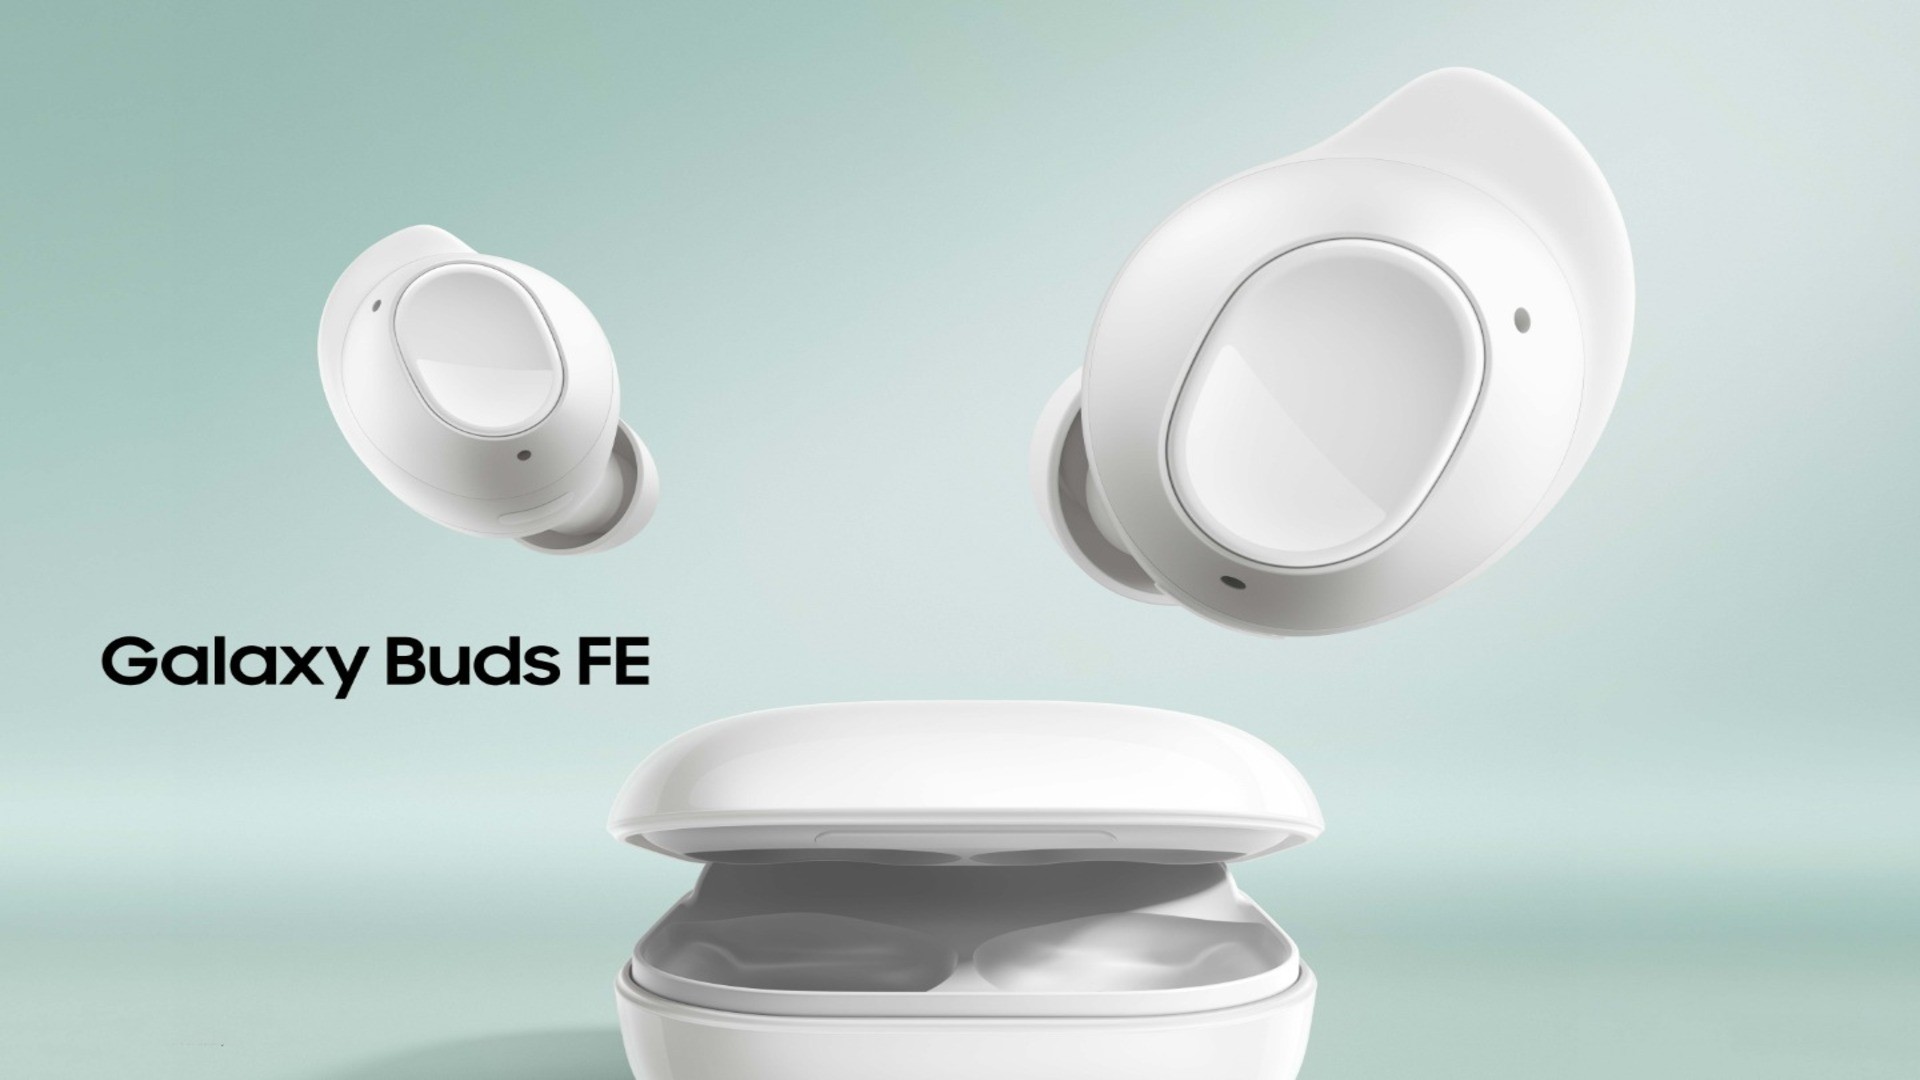 Los Samsung Galaxy Buds FE se anunciaron con sonido de alta calidad, ANC y Bluetooth 5.2